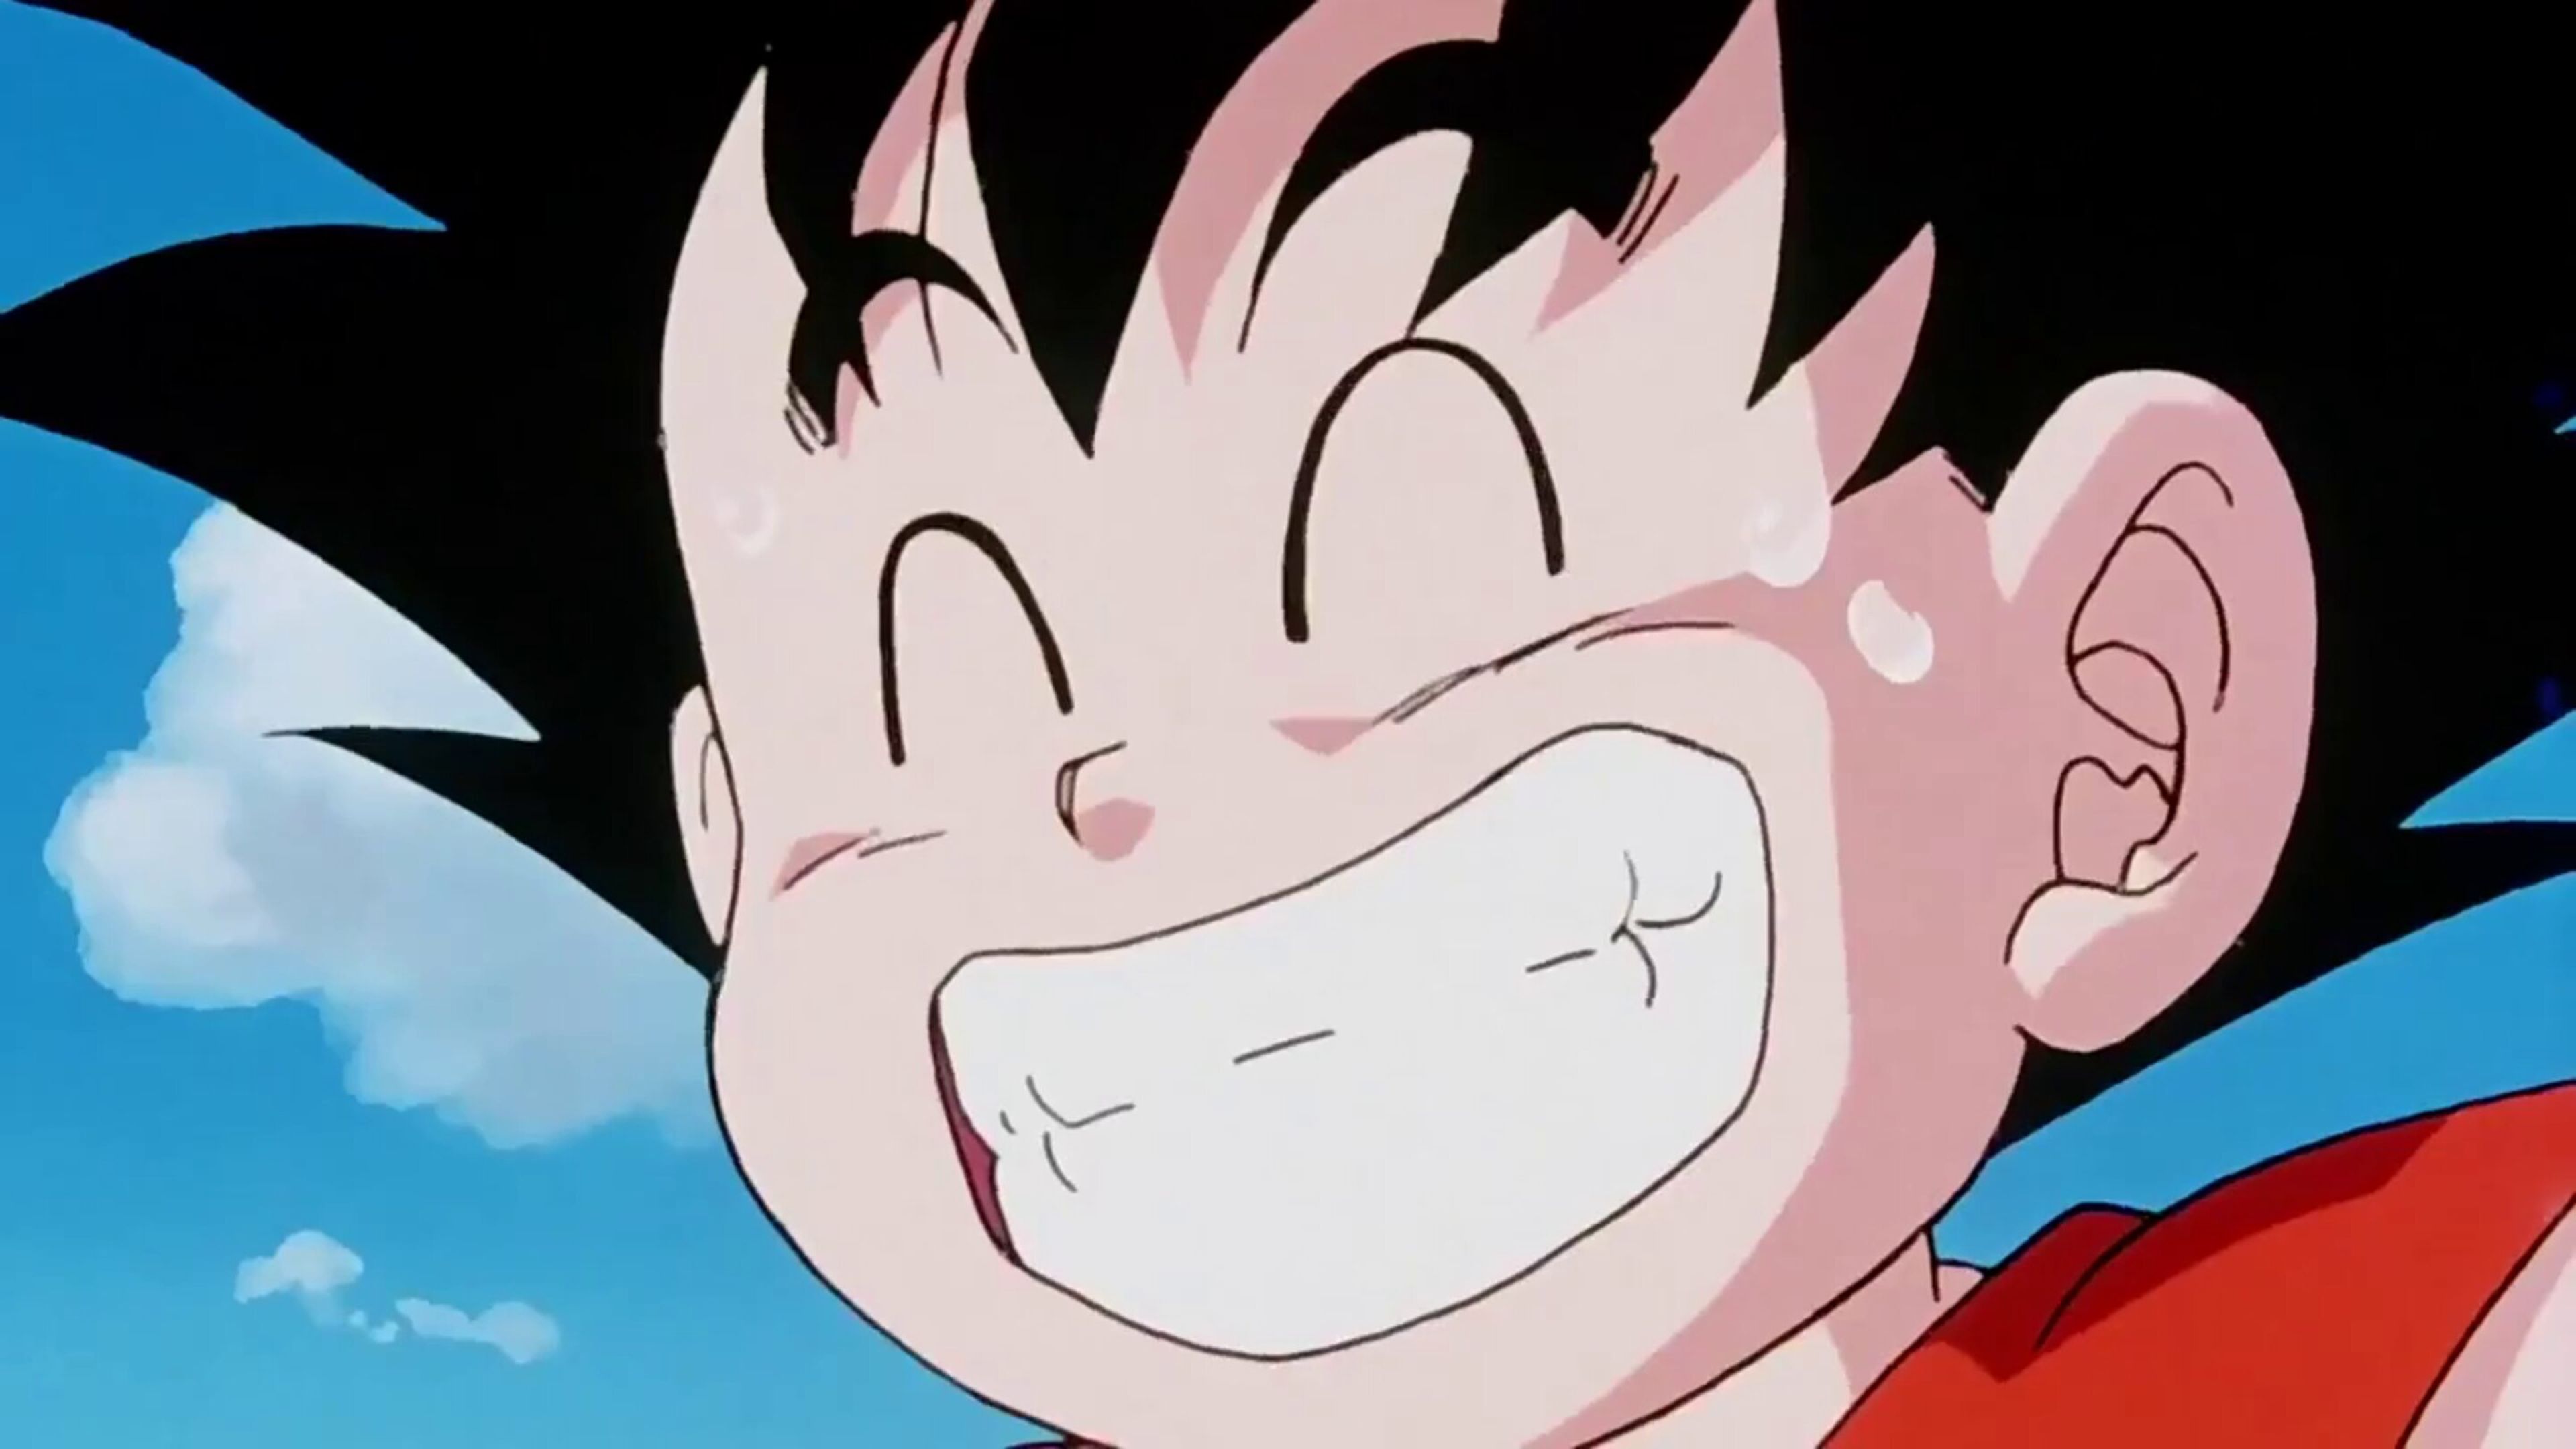 Sale a la luz un nuevo dibujo de Goku creado por Akira Toriyama antes de que se estrenara la serie de Dragon Ball en Japón 